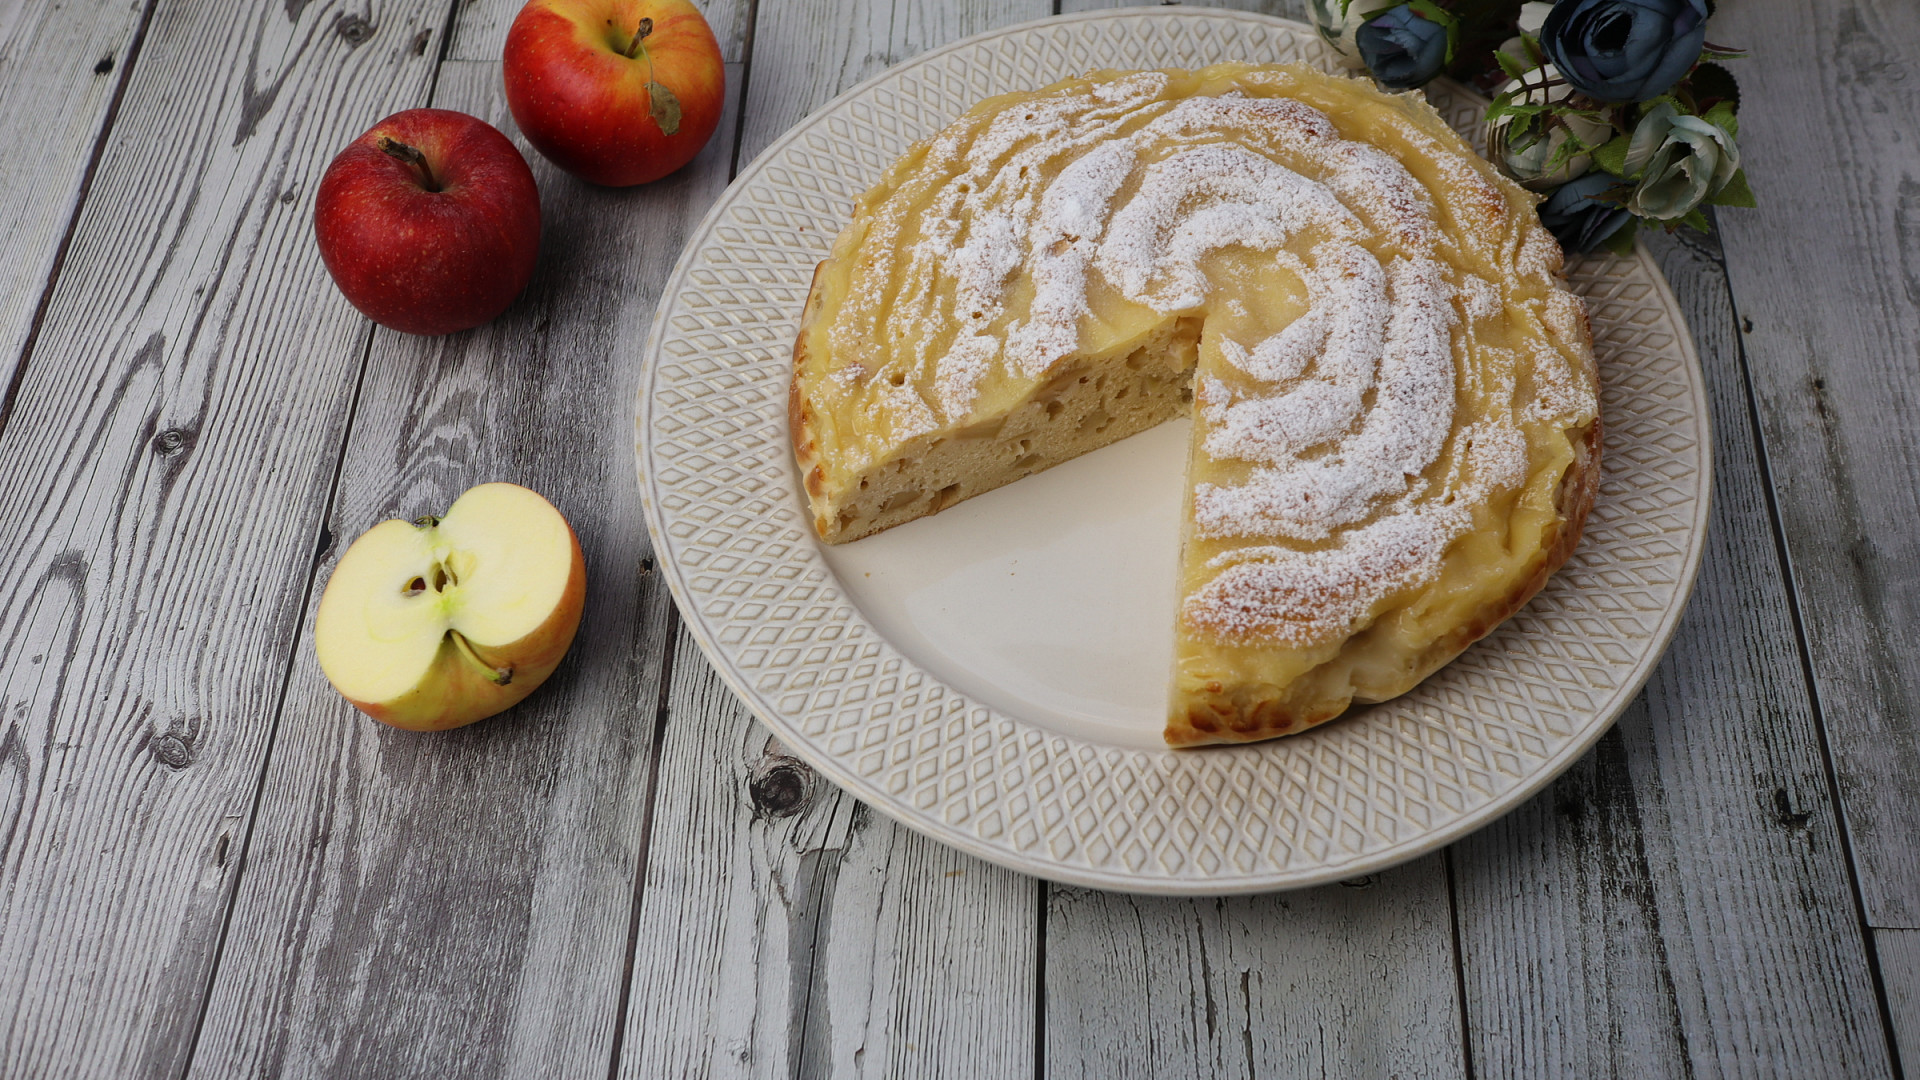 Jablečný koláč s vanilkovým krémem